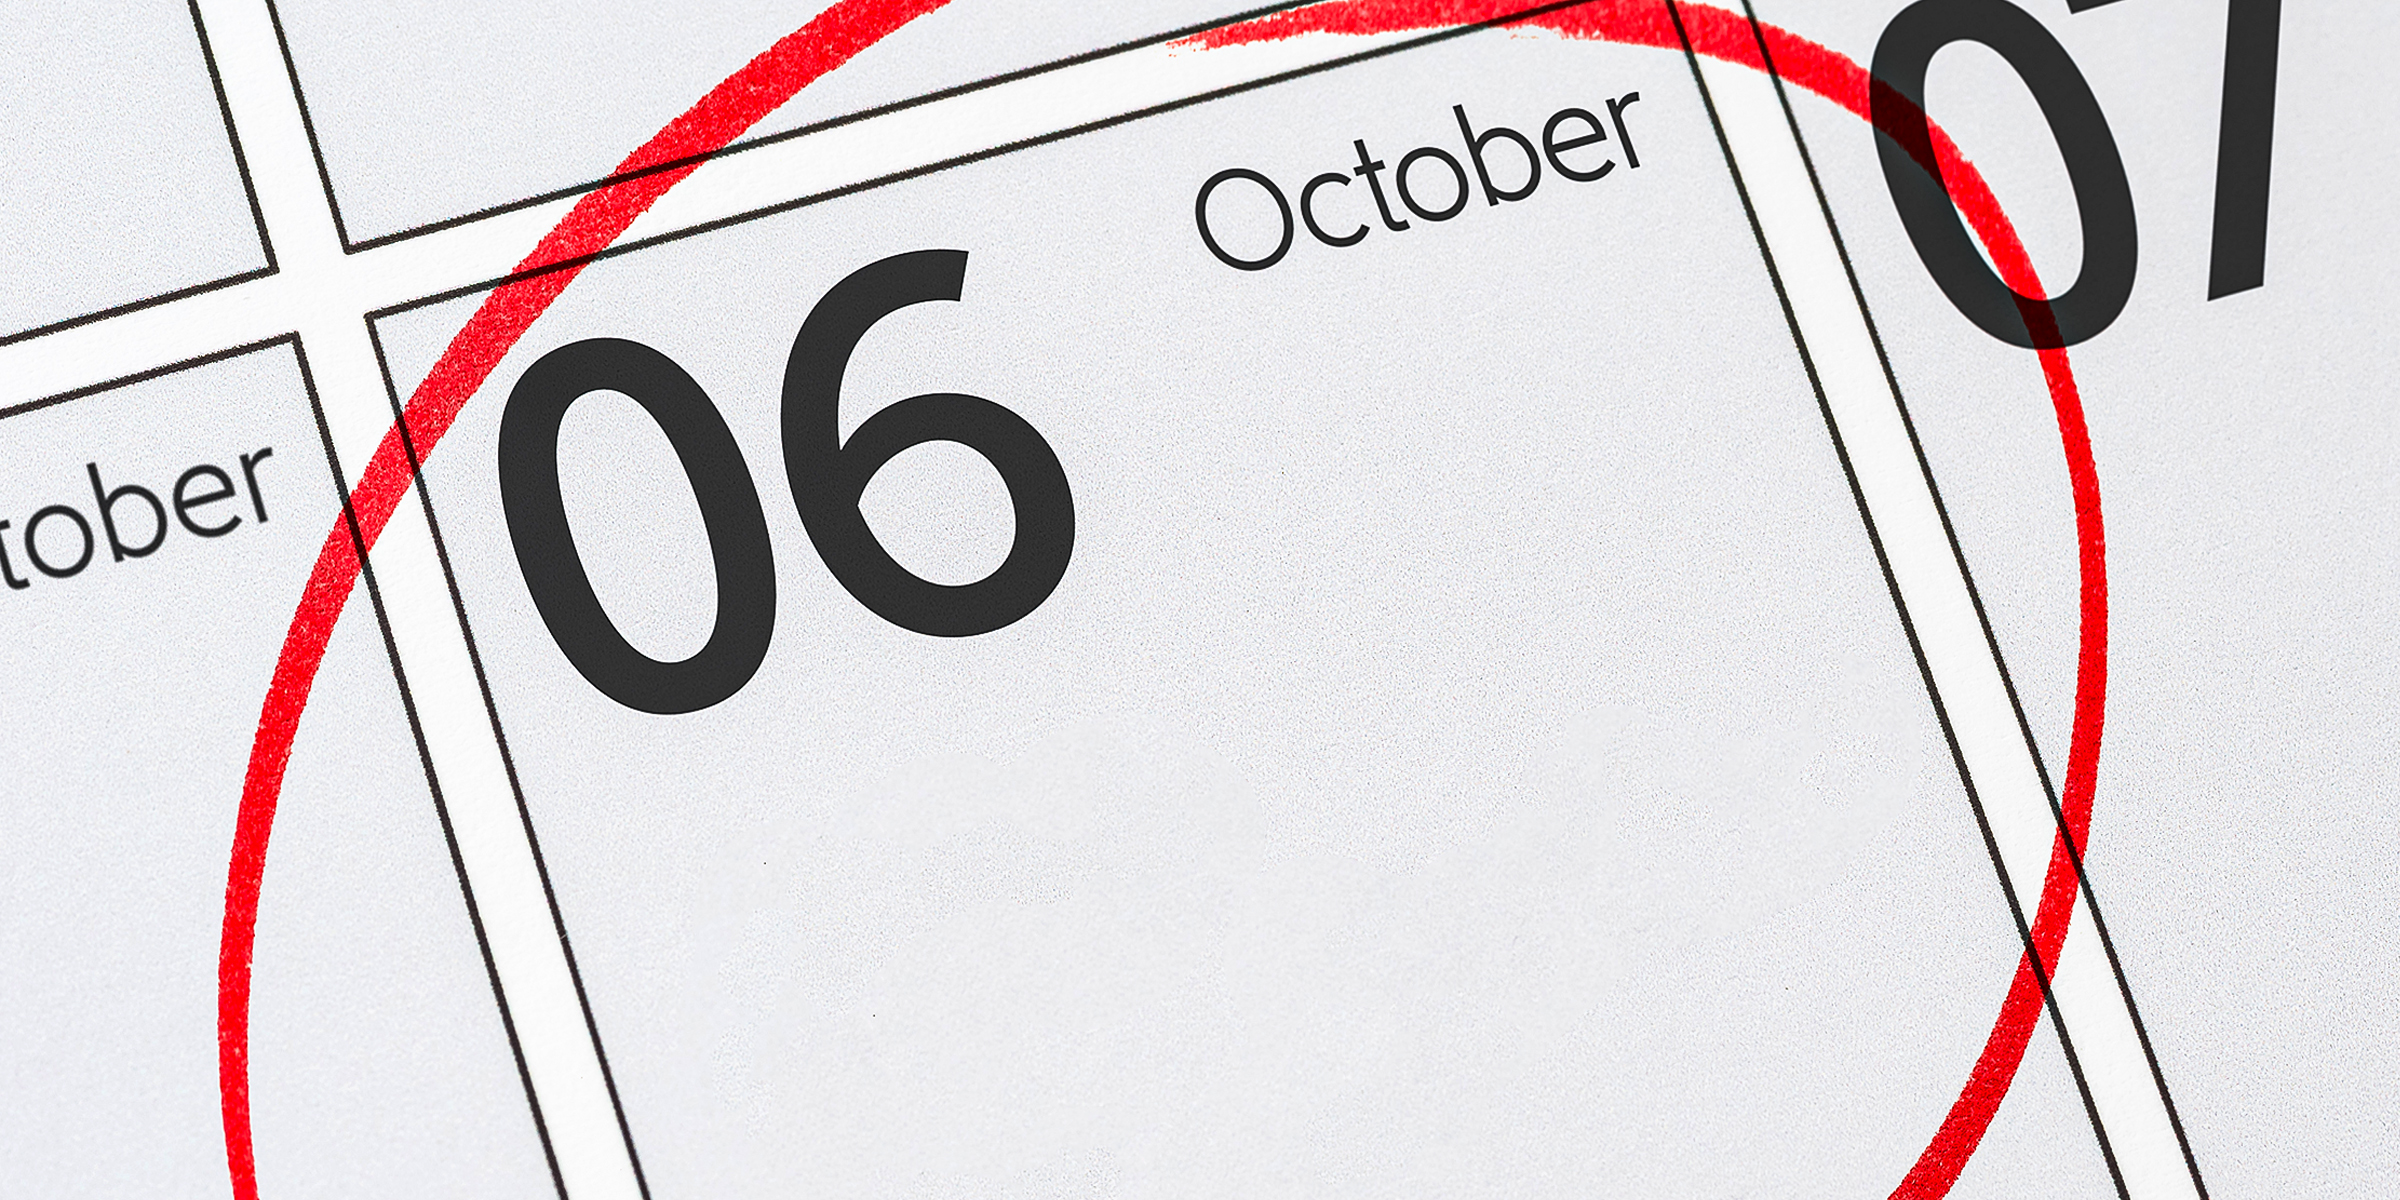 October calendar | Source: Shutterstock